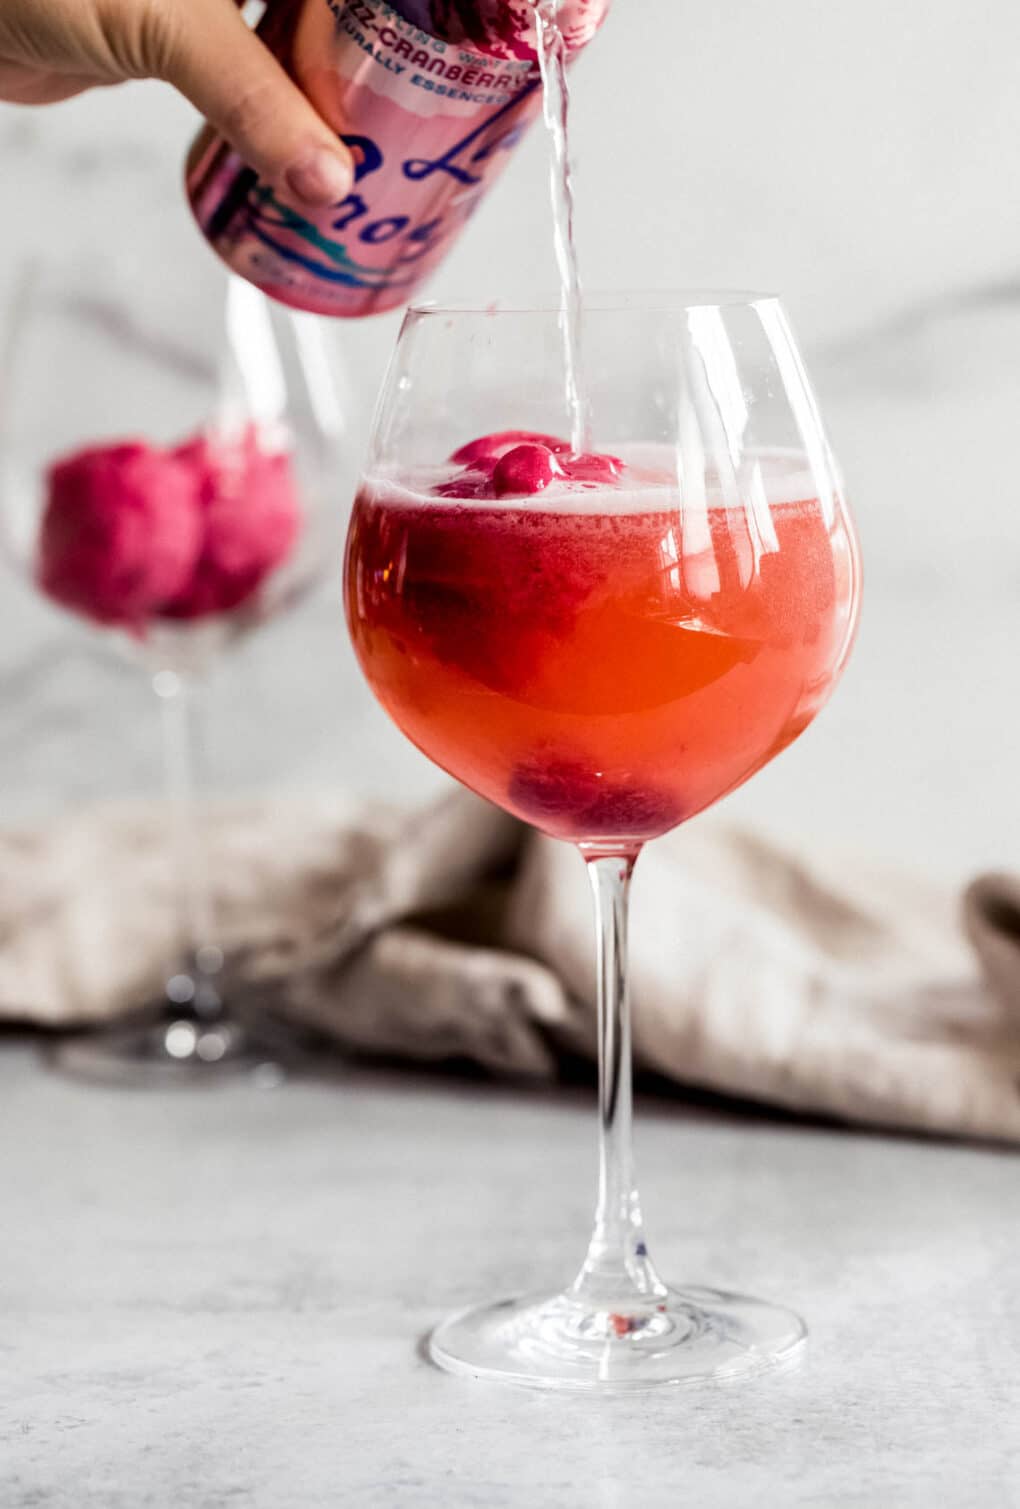 a person pouring cran-raspberry la croix into a wine glass